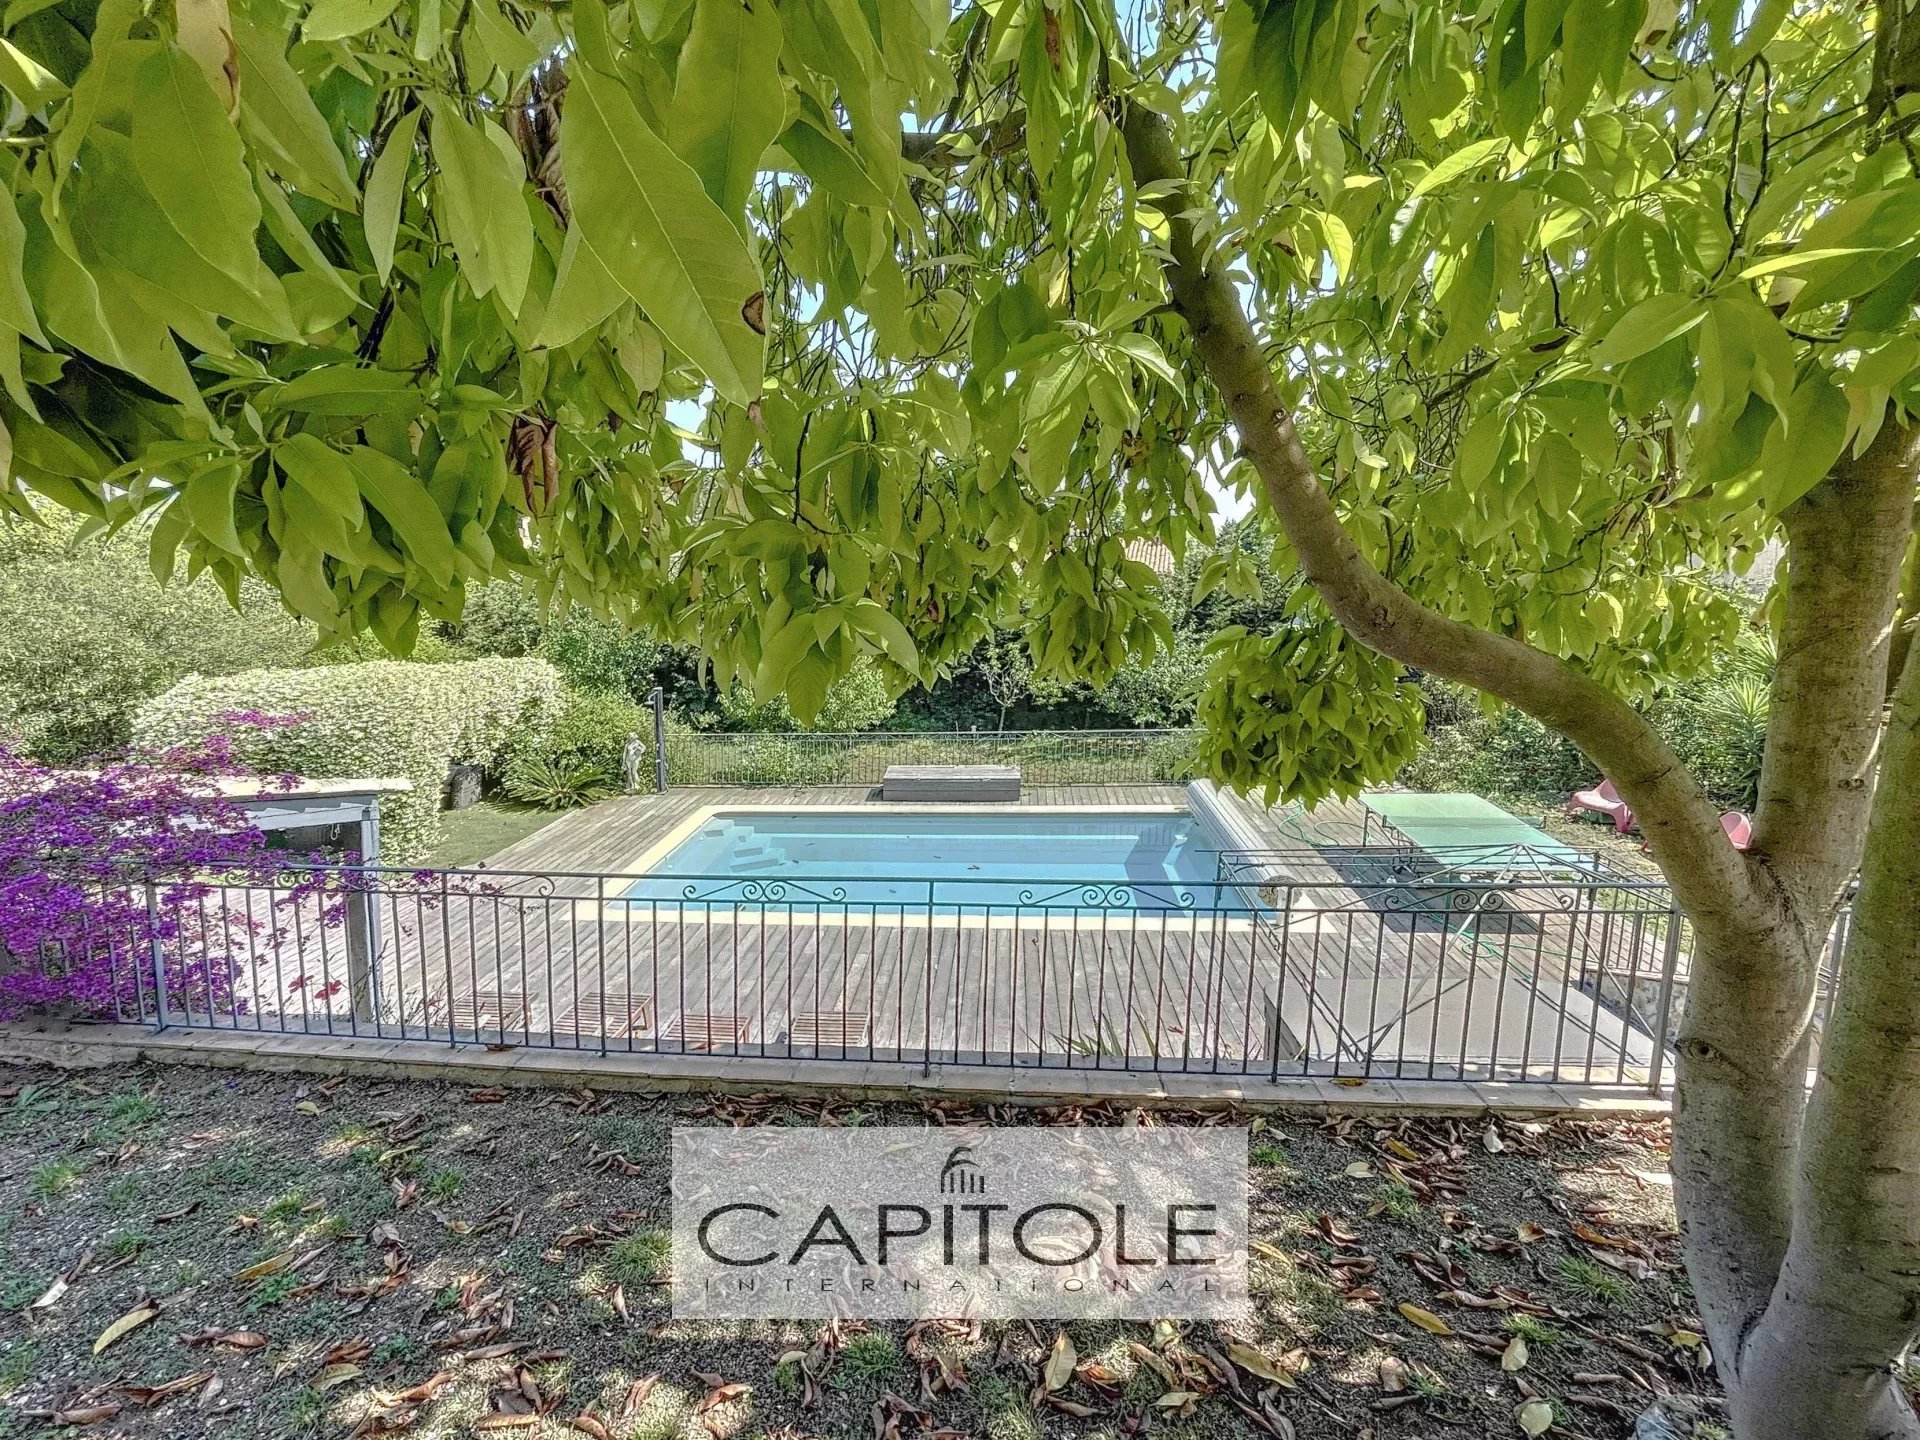 A vendre, EXCLUSIVITE, Antibes, villa provençale 255 m², 7 pièces/ 5 chambres piscine, jardin paysager, garage